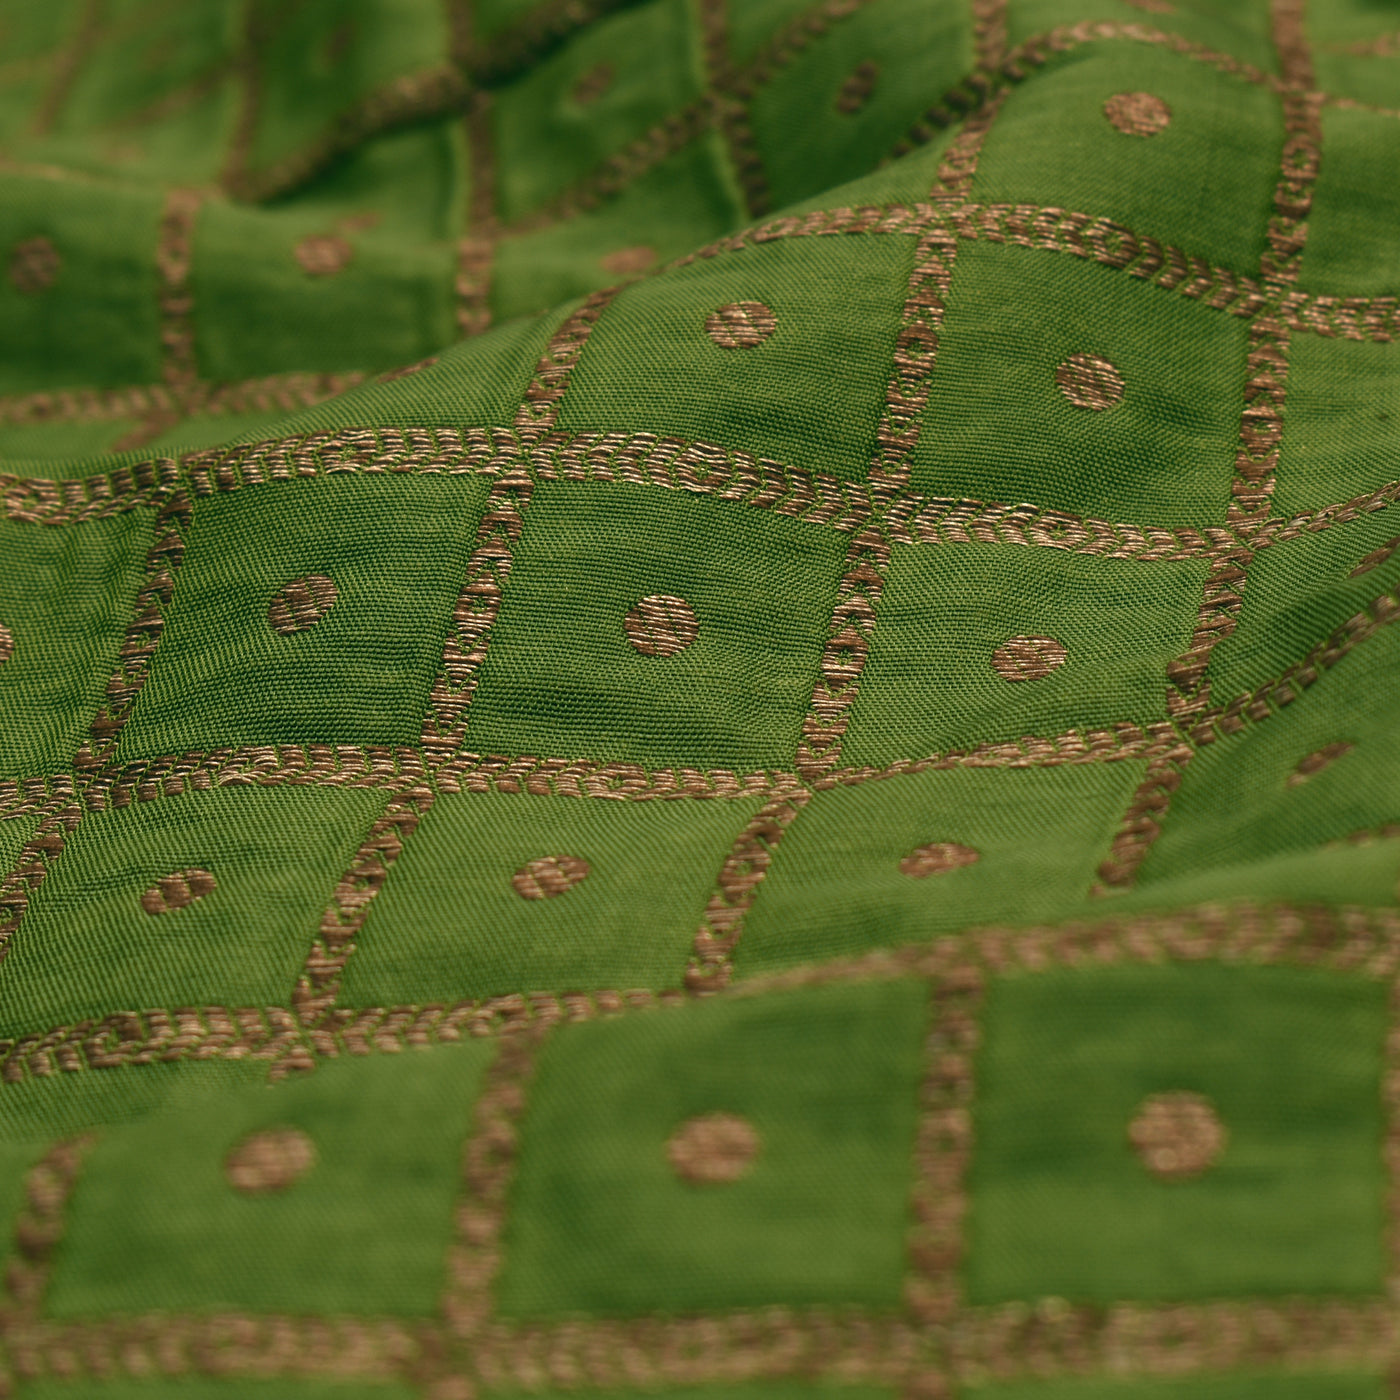 Chutney Green Banarasi Silk Fabric with Zari Checks Dots Design